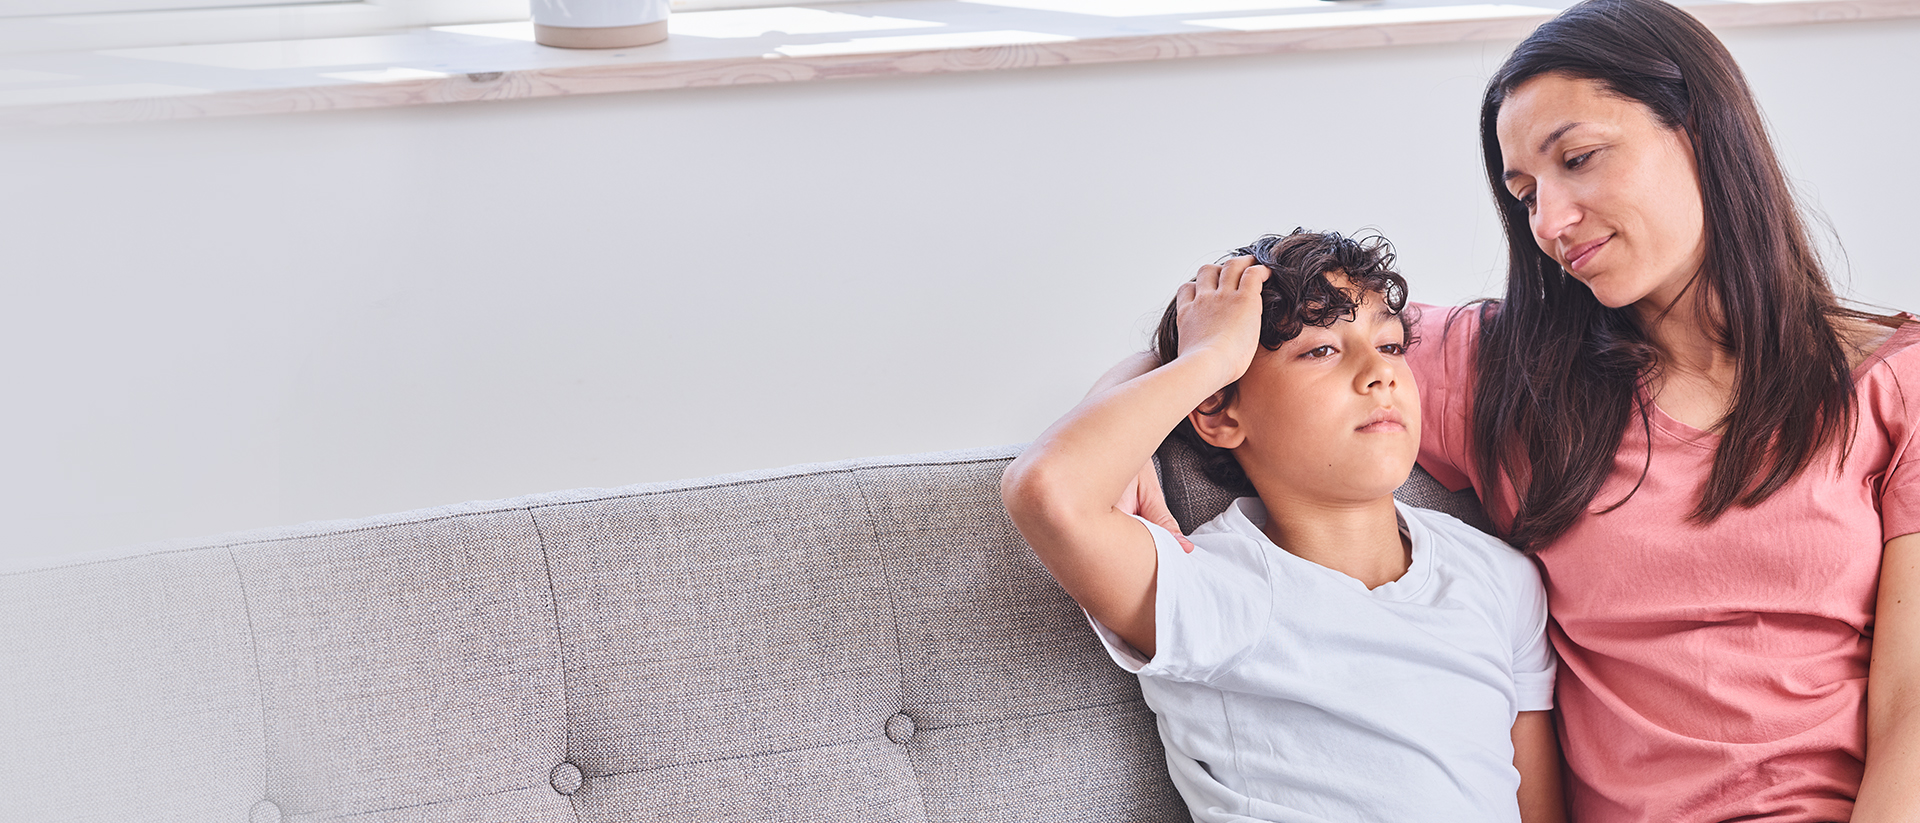 Kopfschmerzen bei Kindern und Jugendlichen